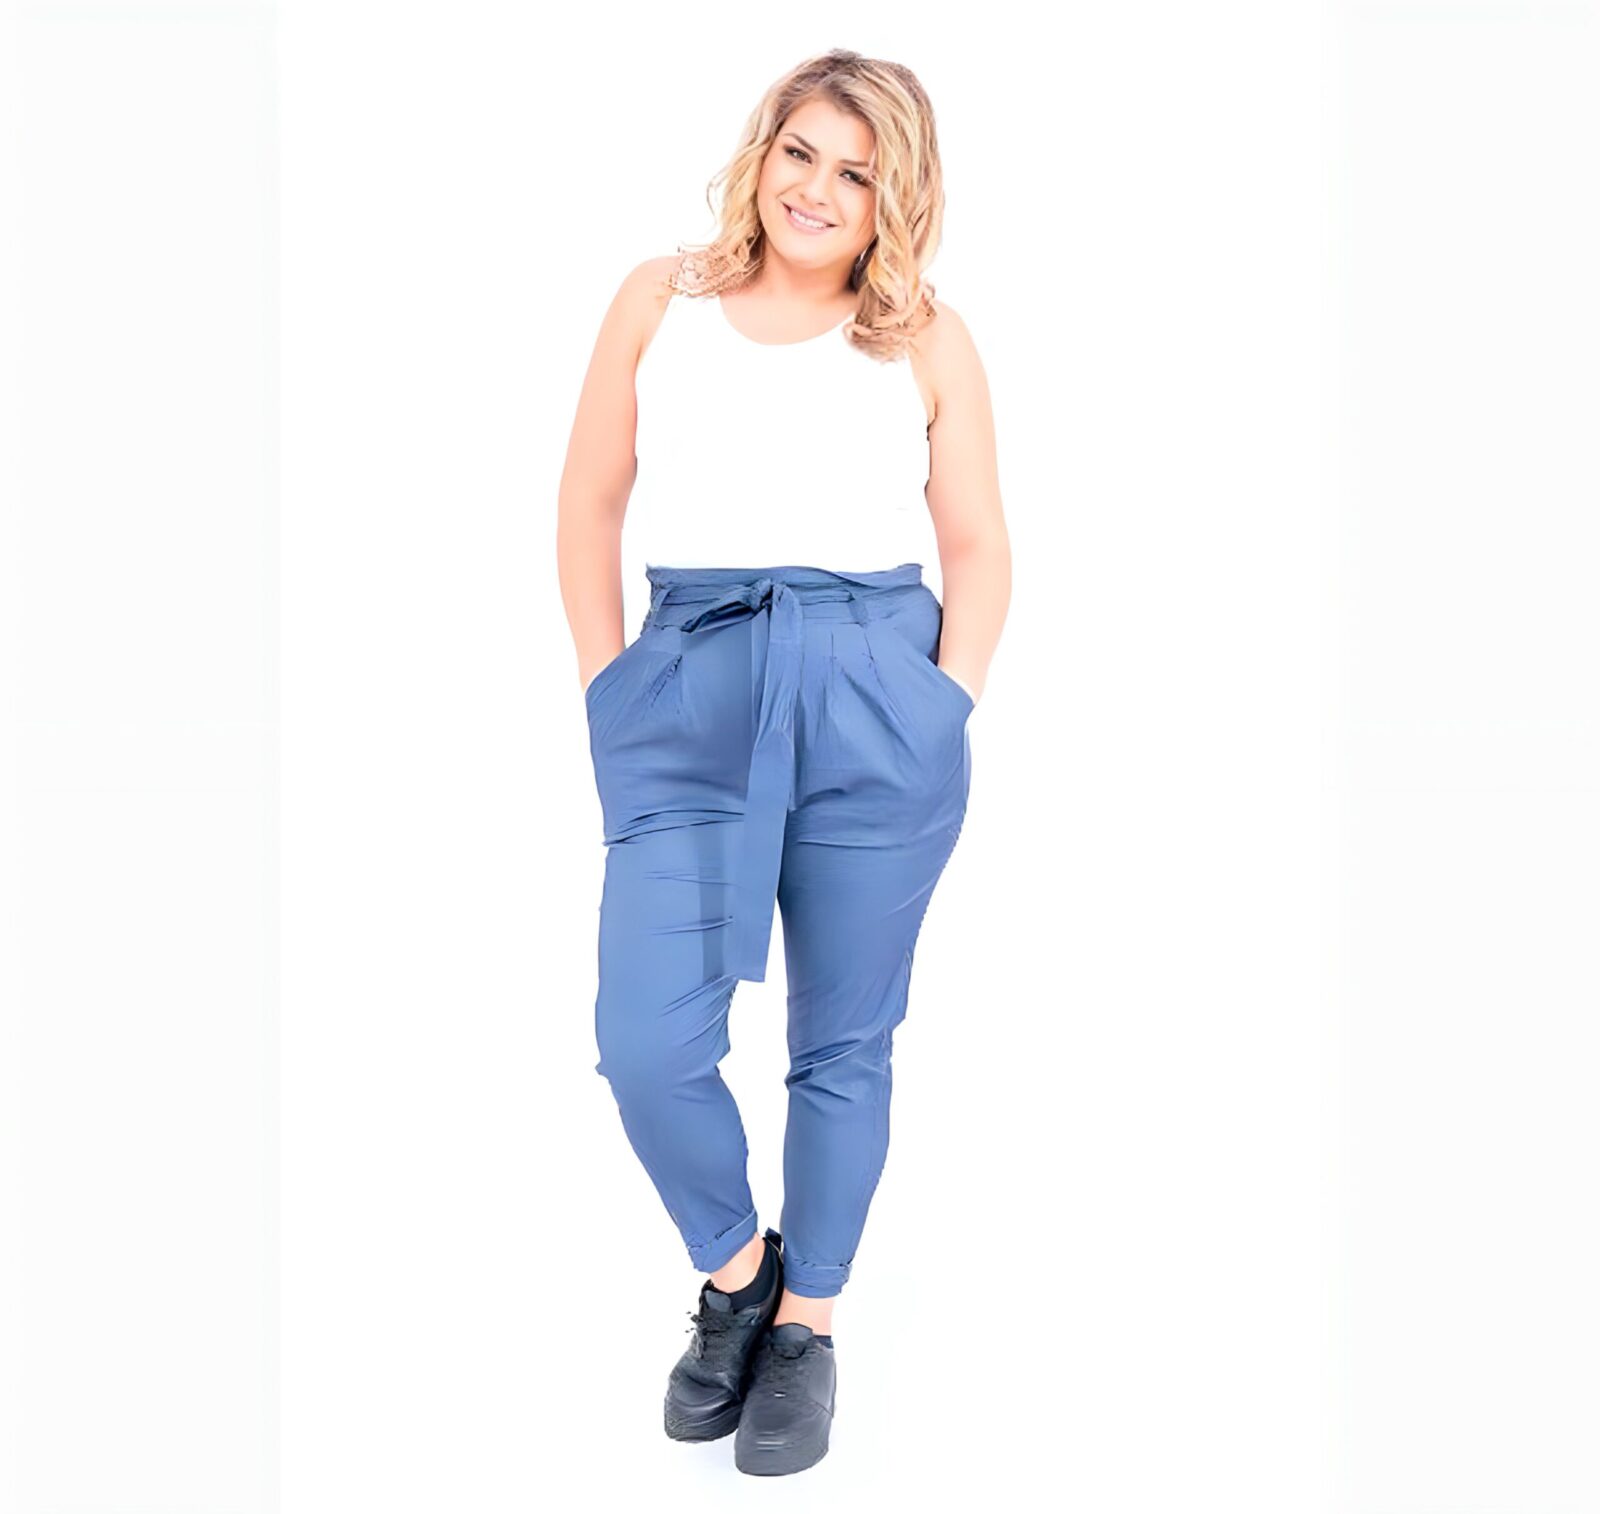 Outfit con pantalón elástico lazo azul jeans tallas grandes